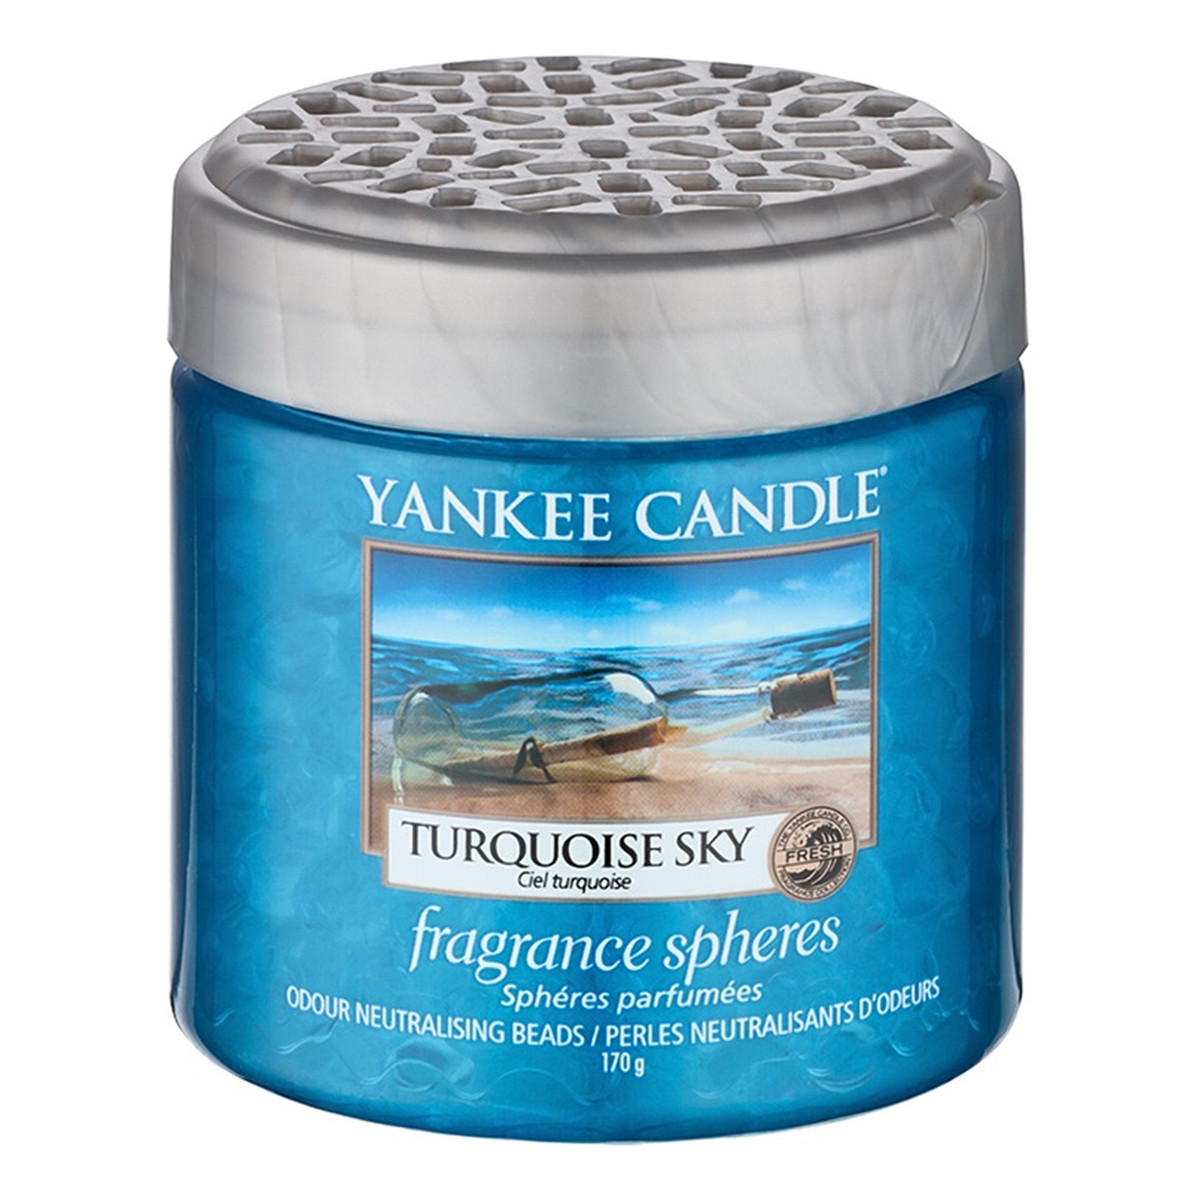 Yankee Candle Fragrance Spheres kuleczki zapachowe Turquoise Sky 170g